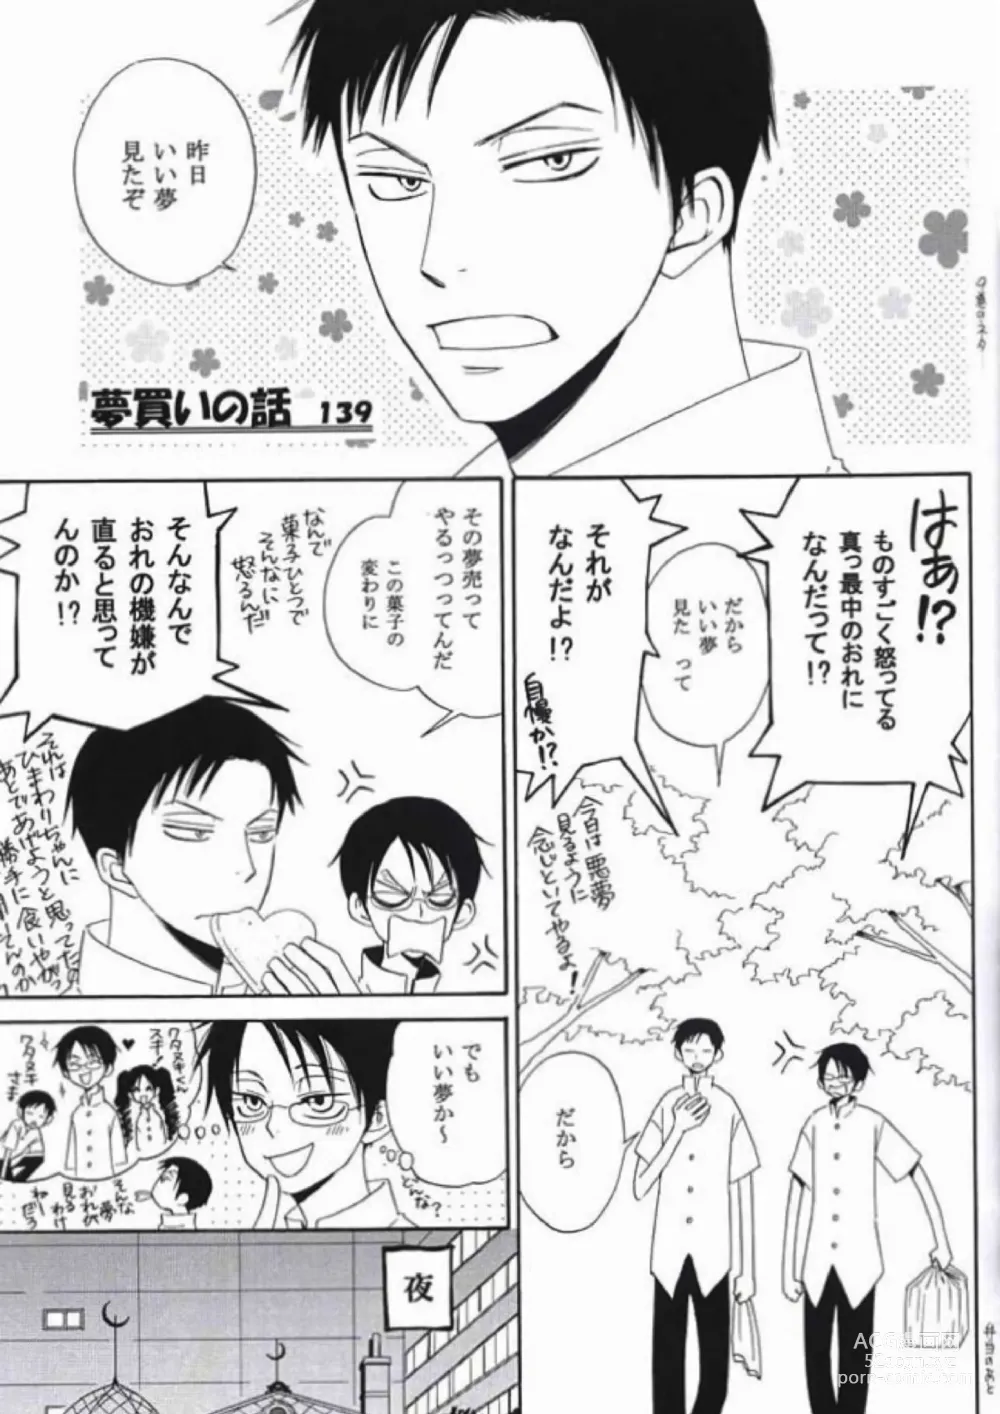 Page 14 of doujinshi Natsu no Shizuku